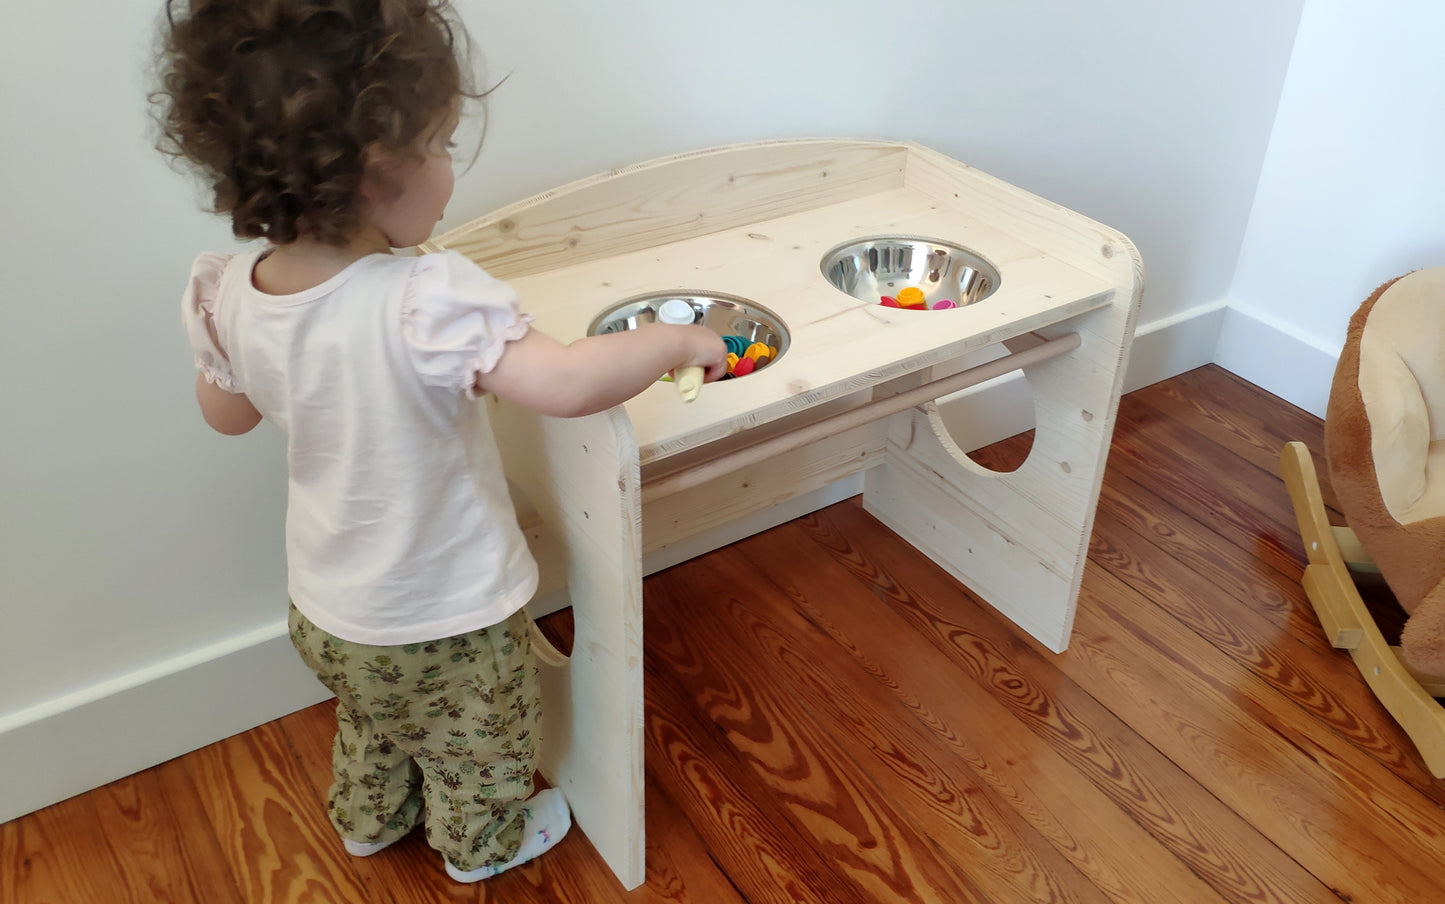 Bureau / Table d'éveil et d'apprentissage Montessori enfant – FIL